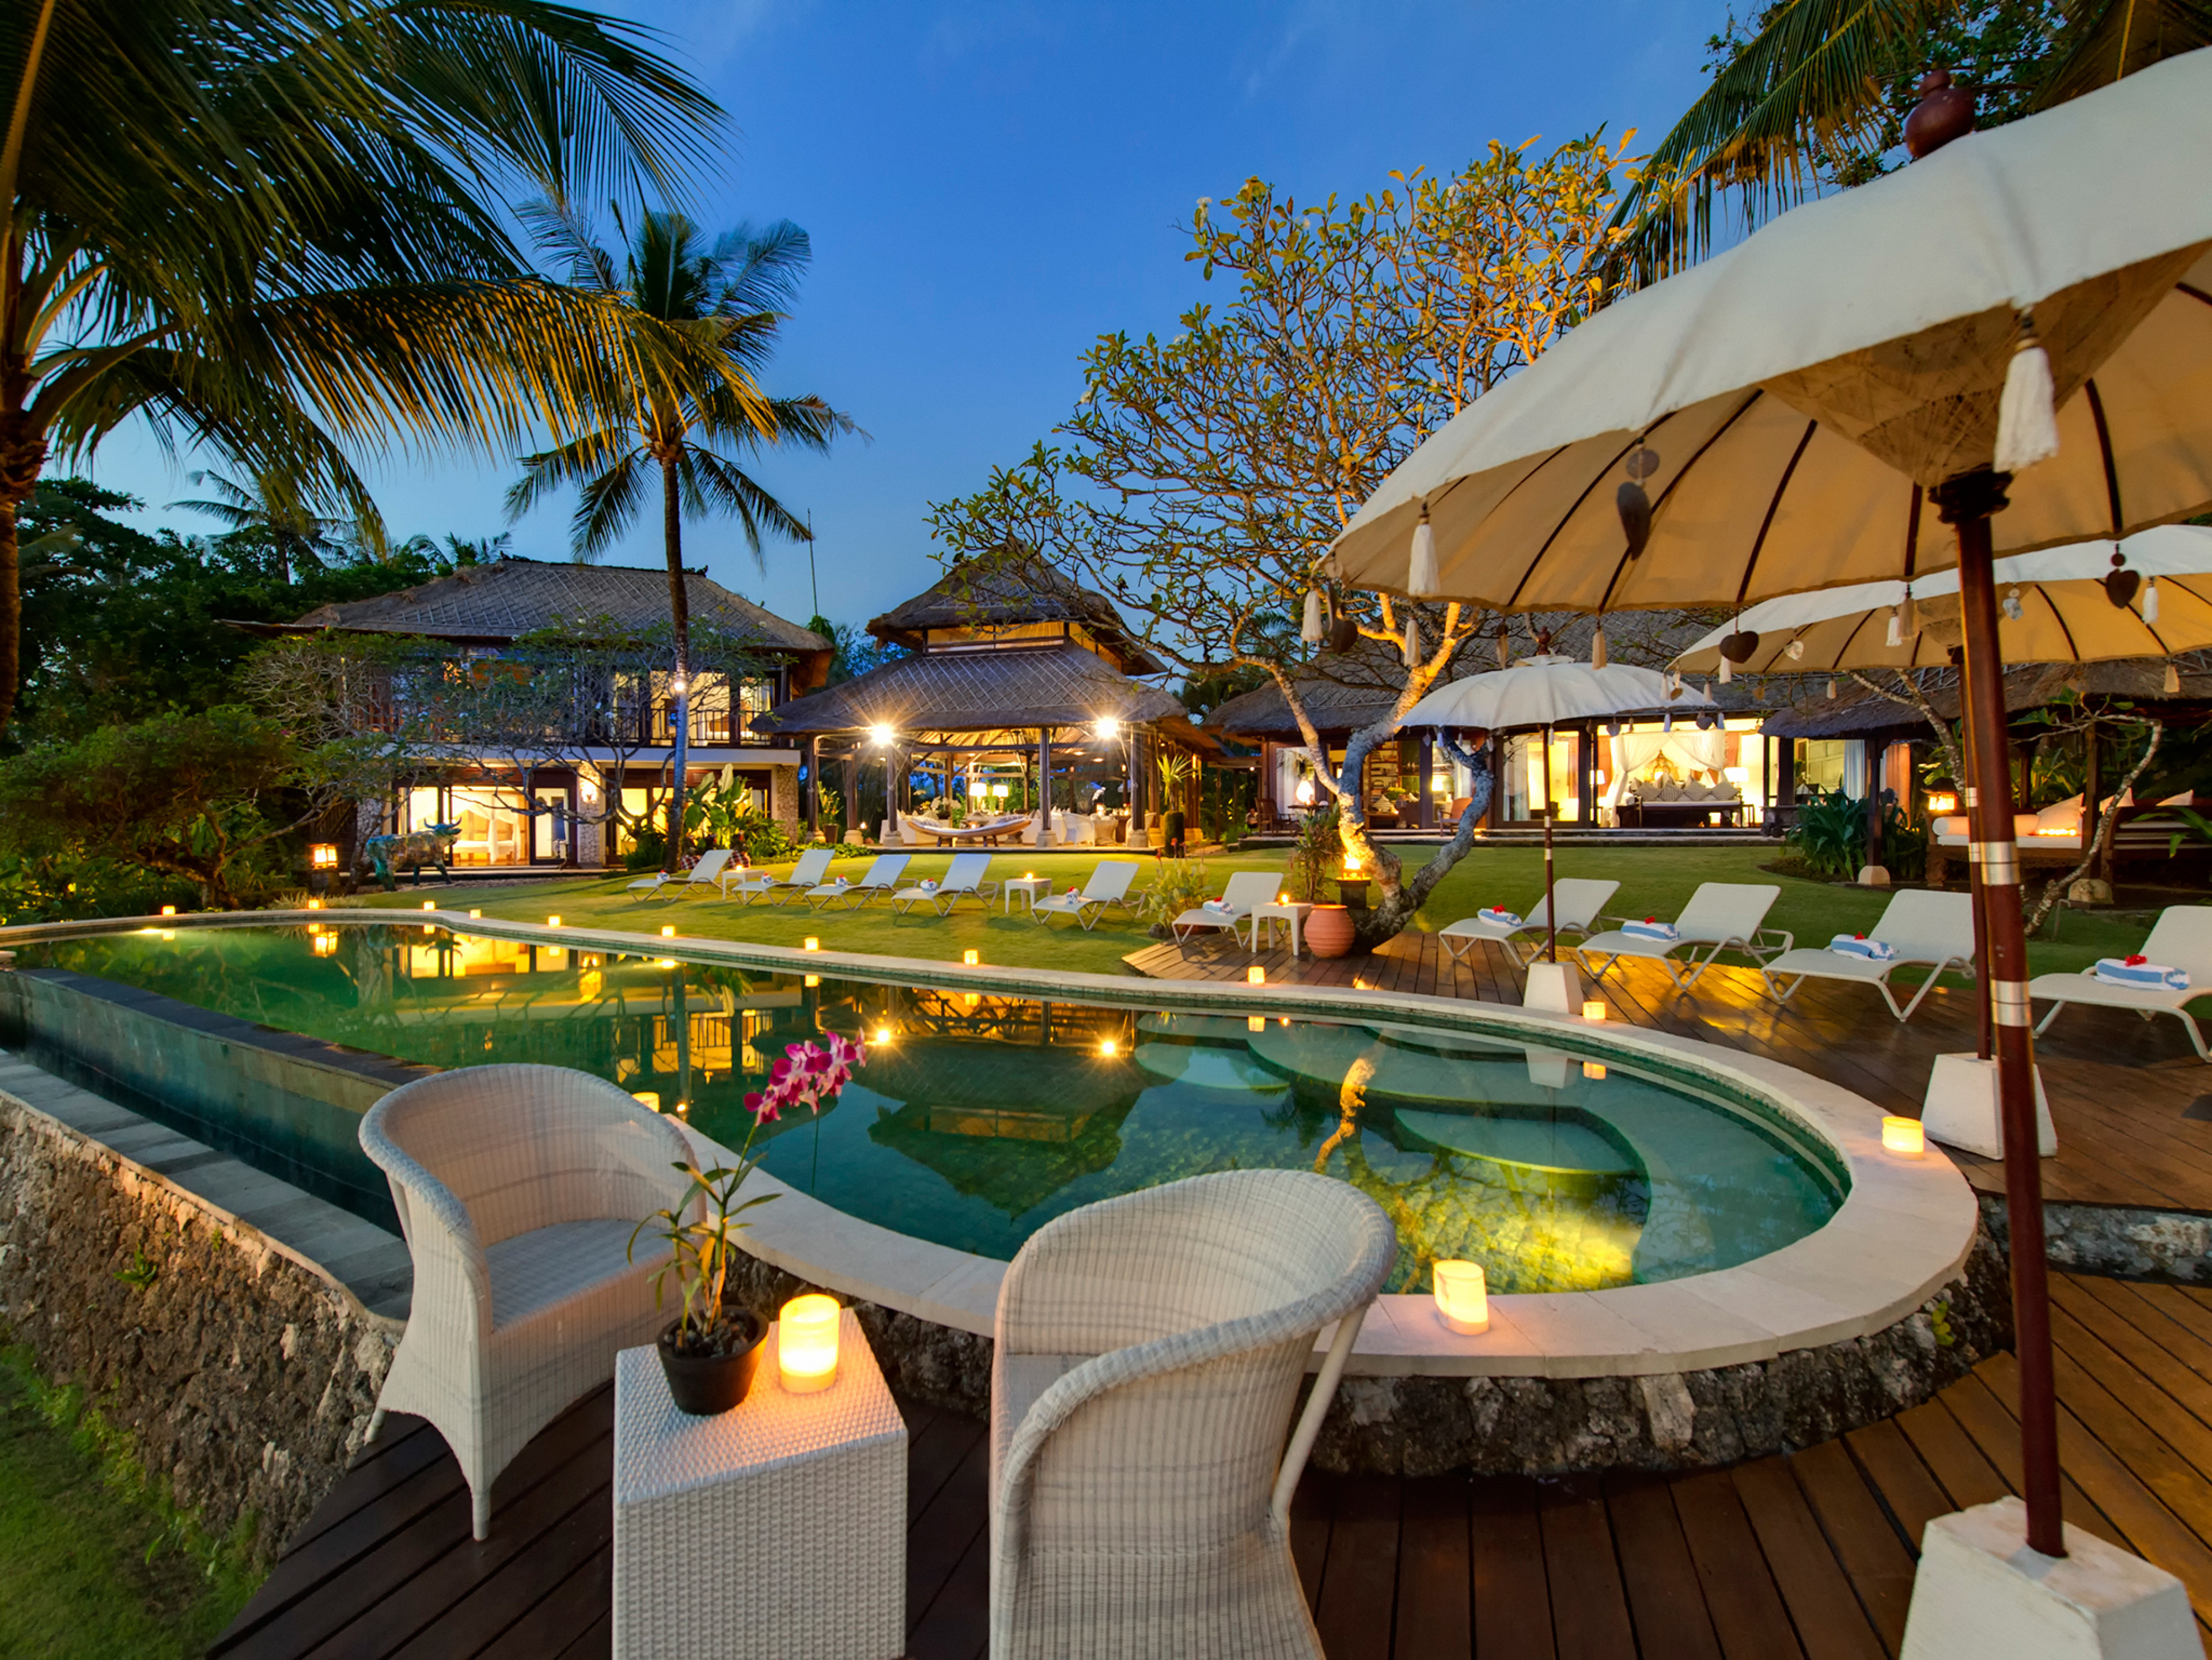 Bali beach villas - Canggu 6648 - Sungai Tinggi Beach Villa